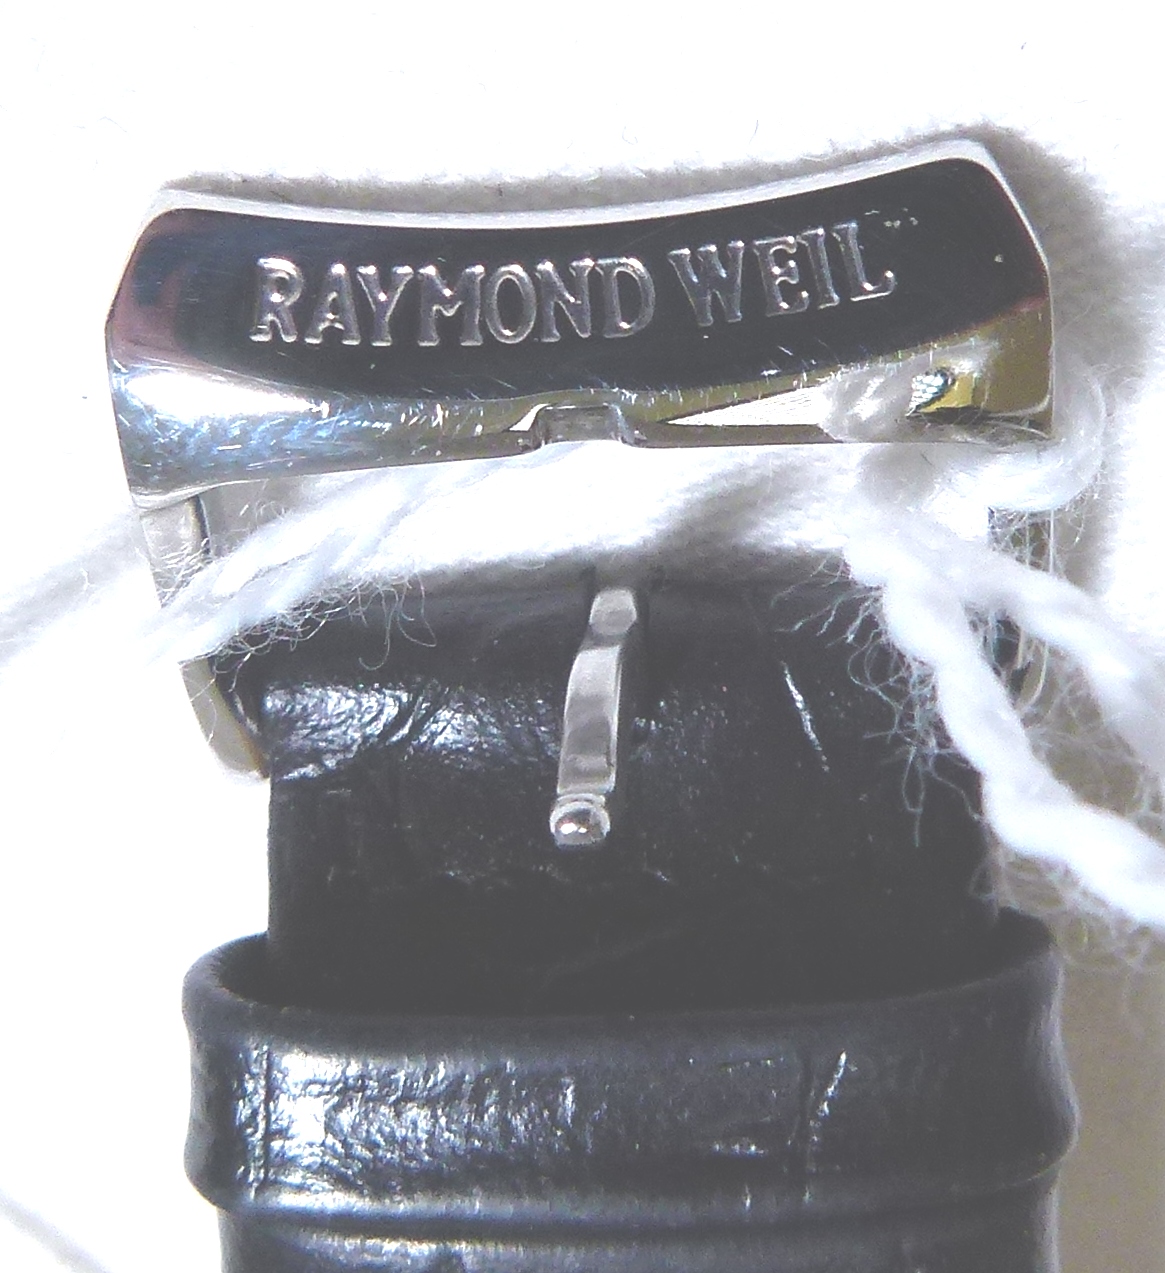 RAYMOND WEIL WRISTWATCH. - Image 6 of 6